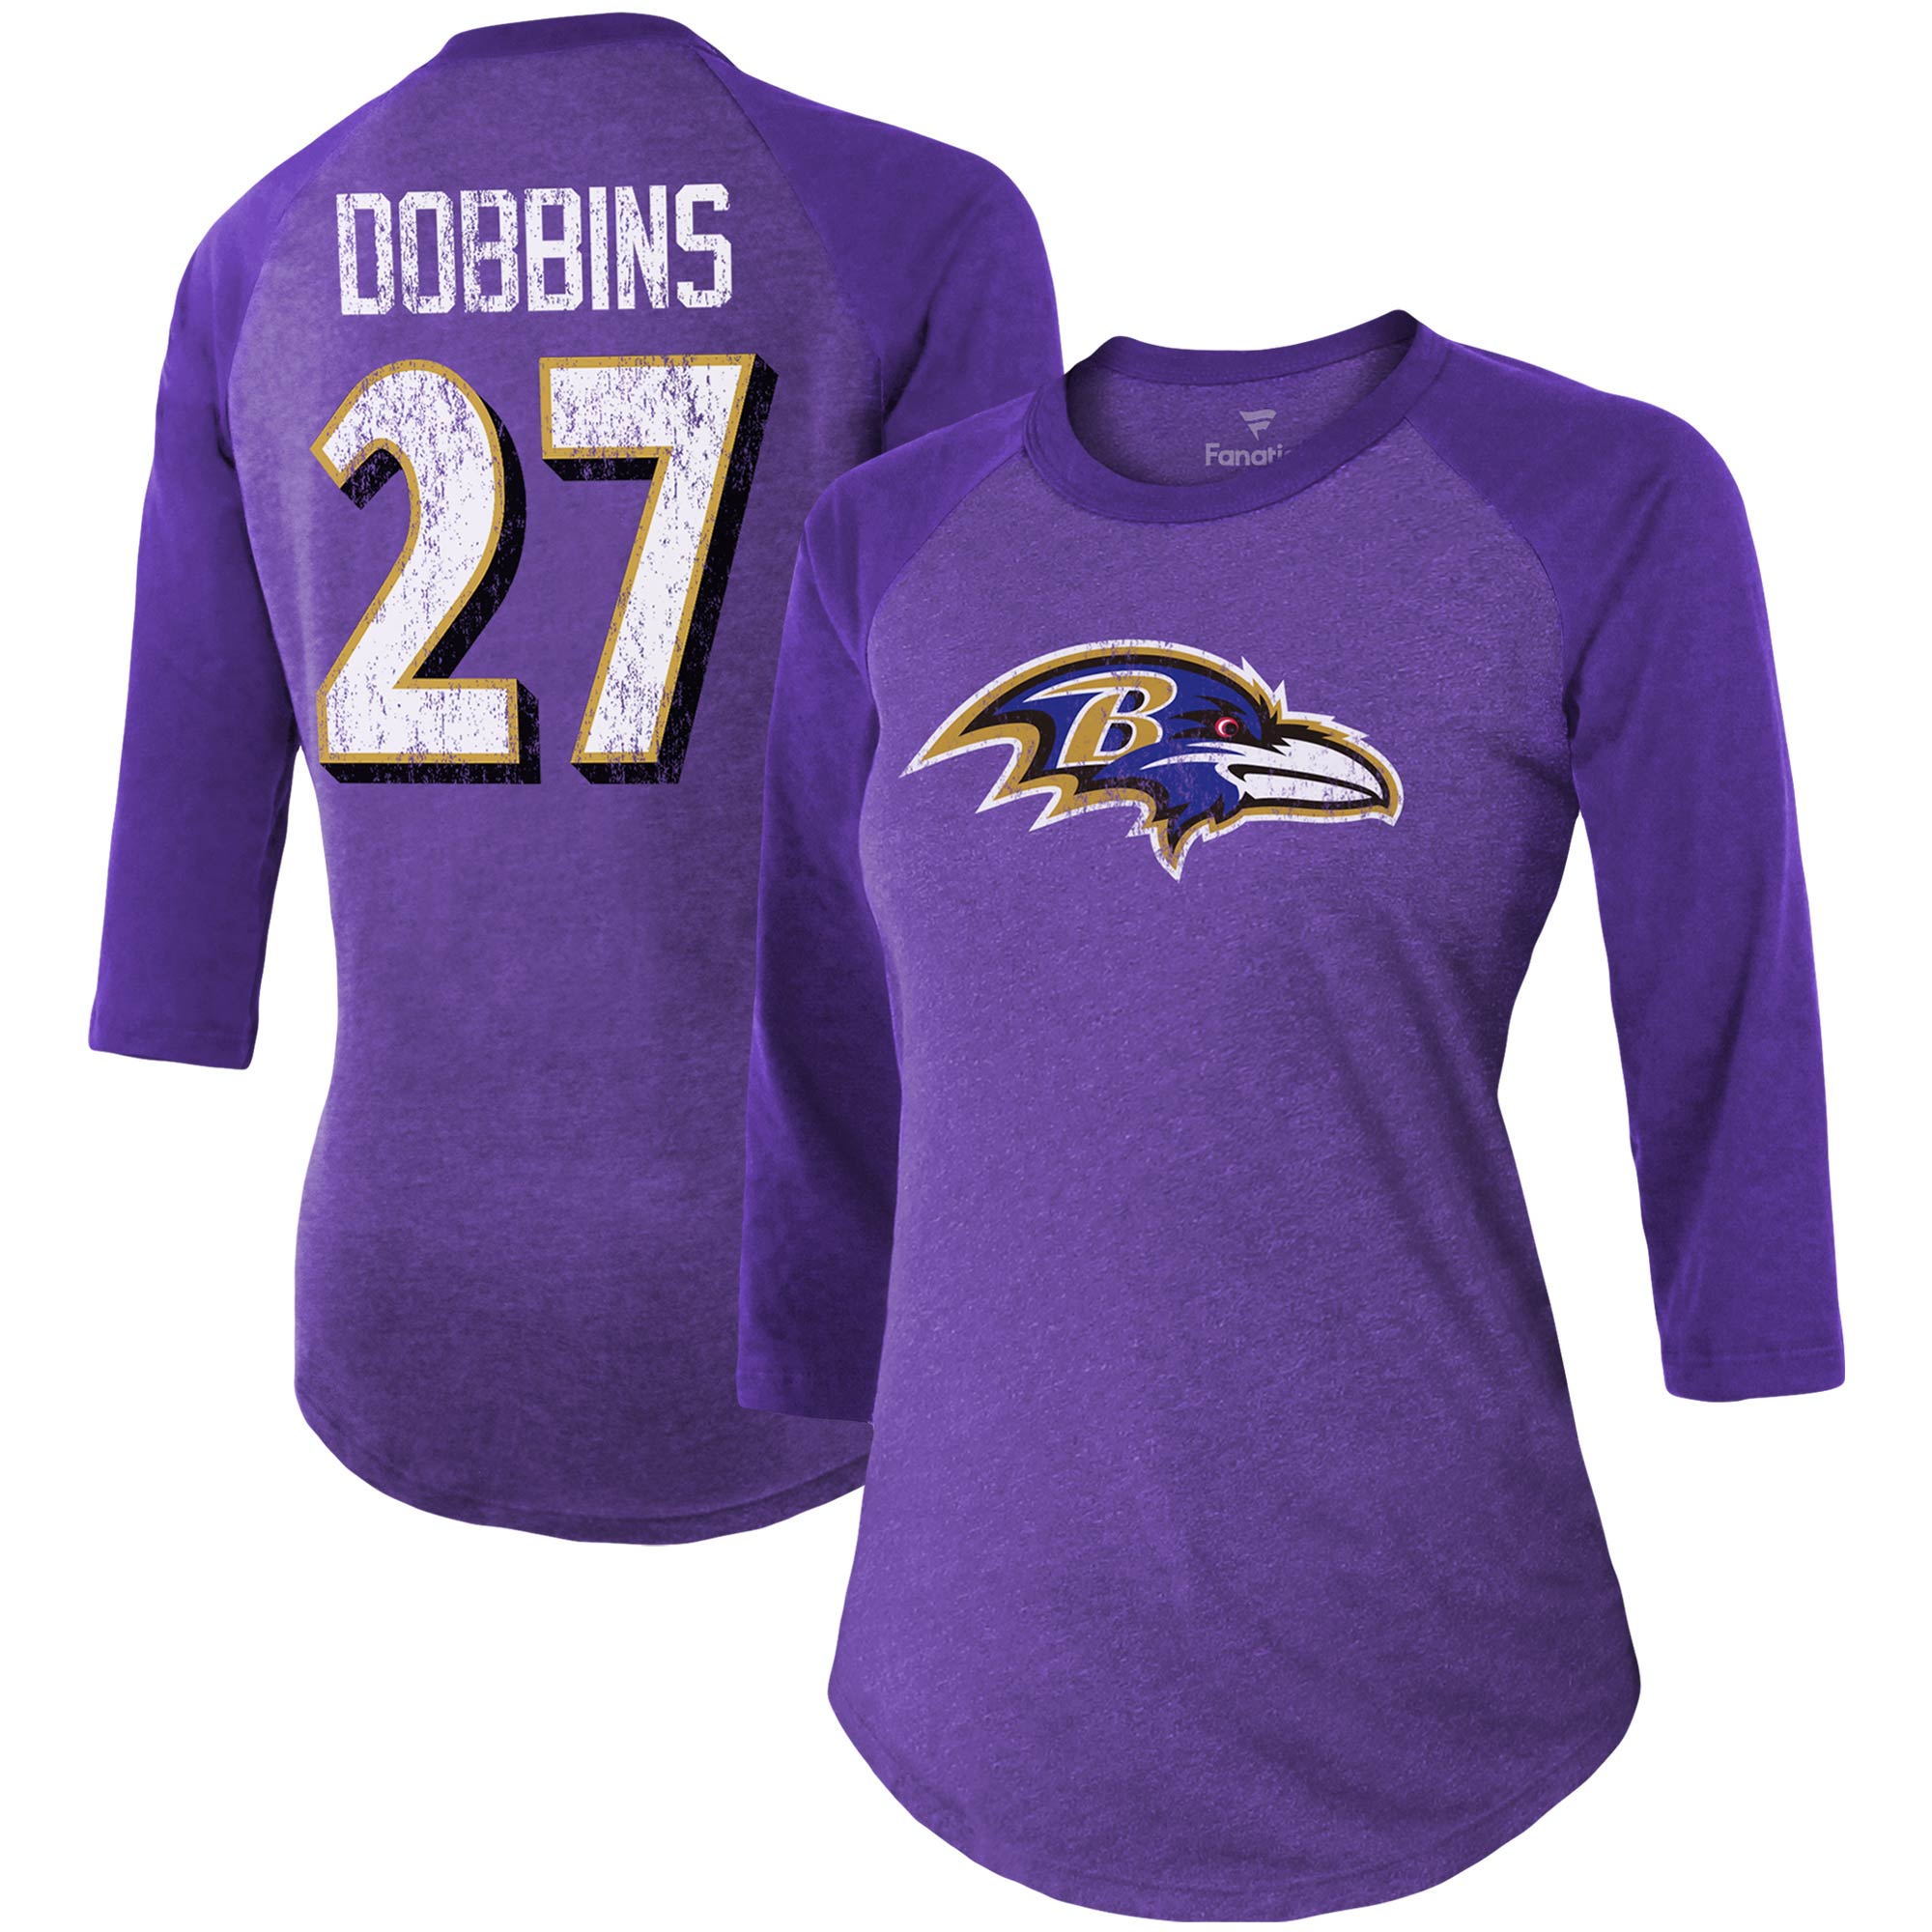 Damen Fanatics J.K. Dobbins Lila Baltimore Ravens Team-Spielername und -nummer Tri-Blend Raglan 3/4-Ärmel T-Shirt